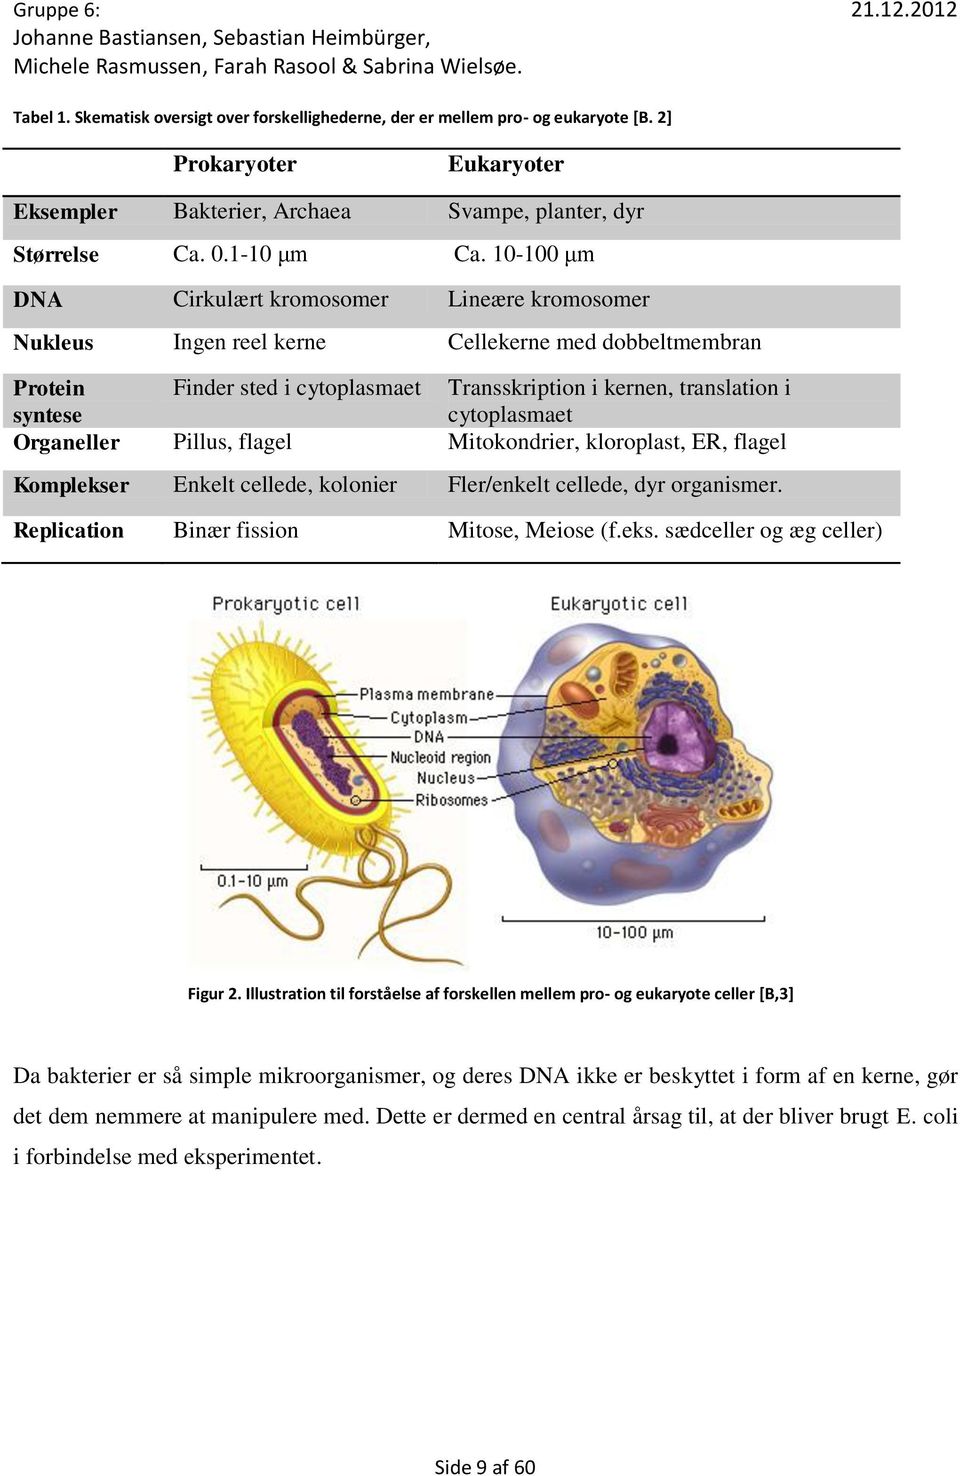 cytoplasmaet Organeller Pillus, flagel Mitokondrier, kloroplast, ER, flagel Komplekser Enkelt cellede, kolonier Fler/enkelt cellede, dyr organismer. Replication Binær fission Mitose, Meiose (f.eks. sædceller og æg celler) Figur 2.